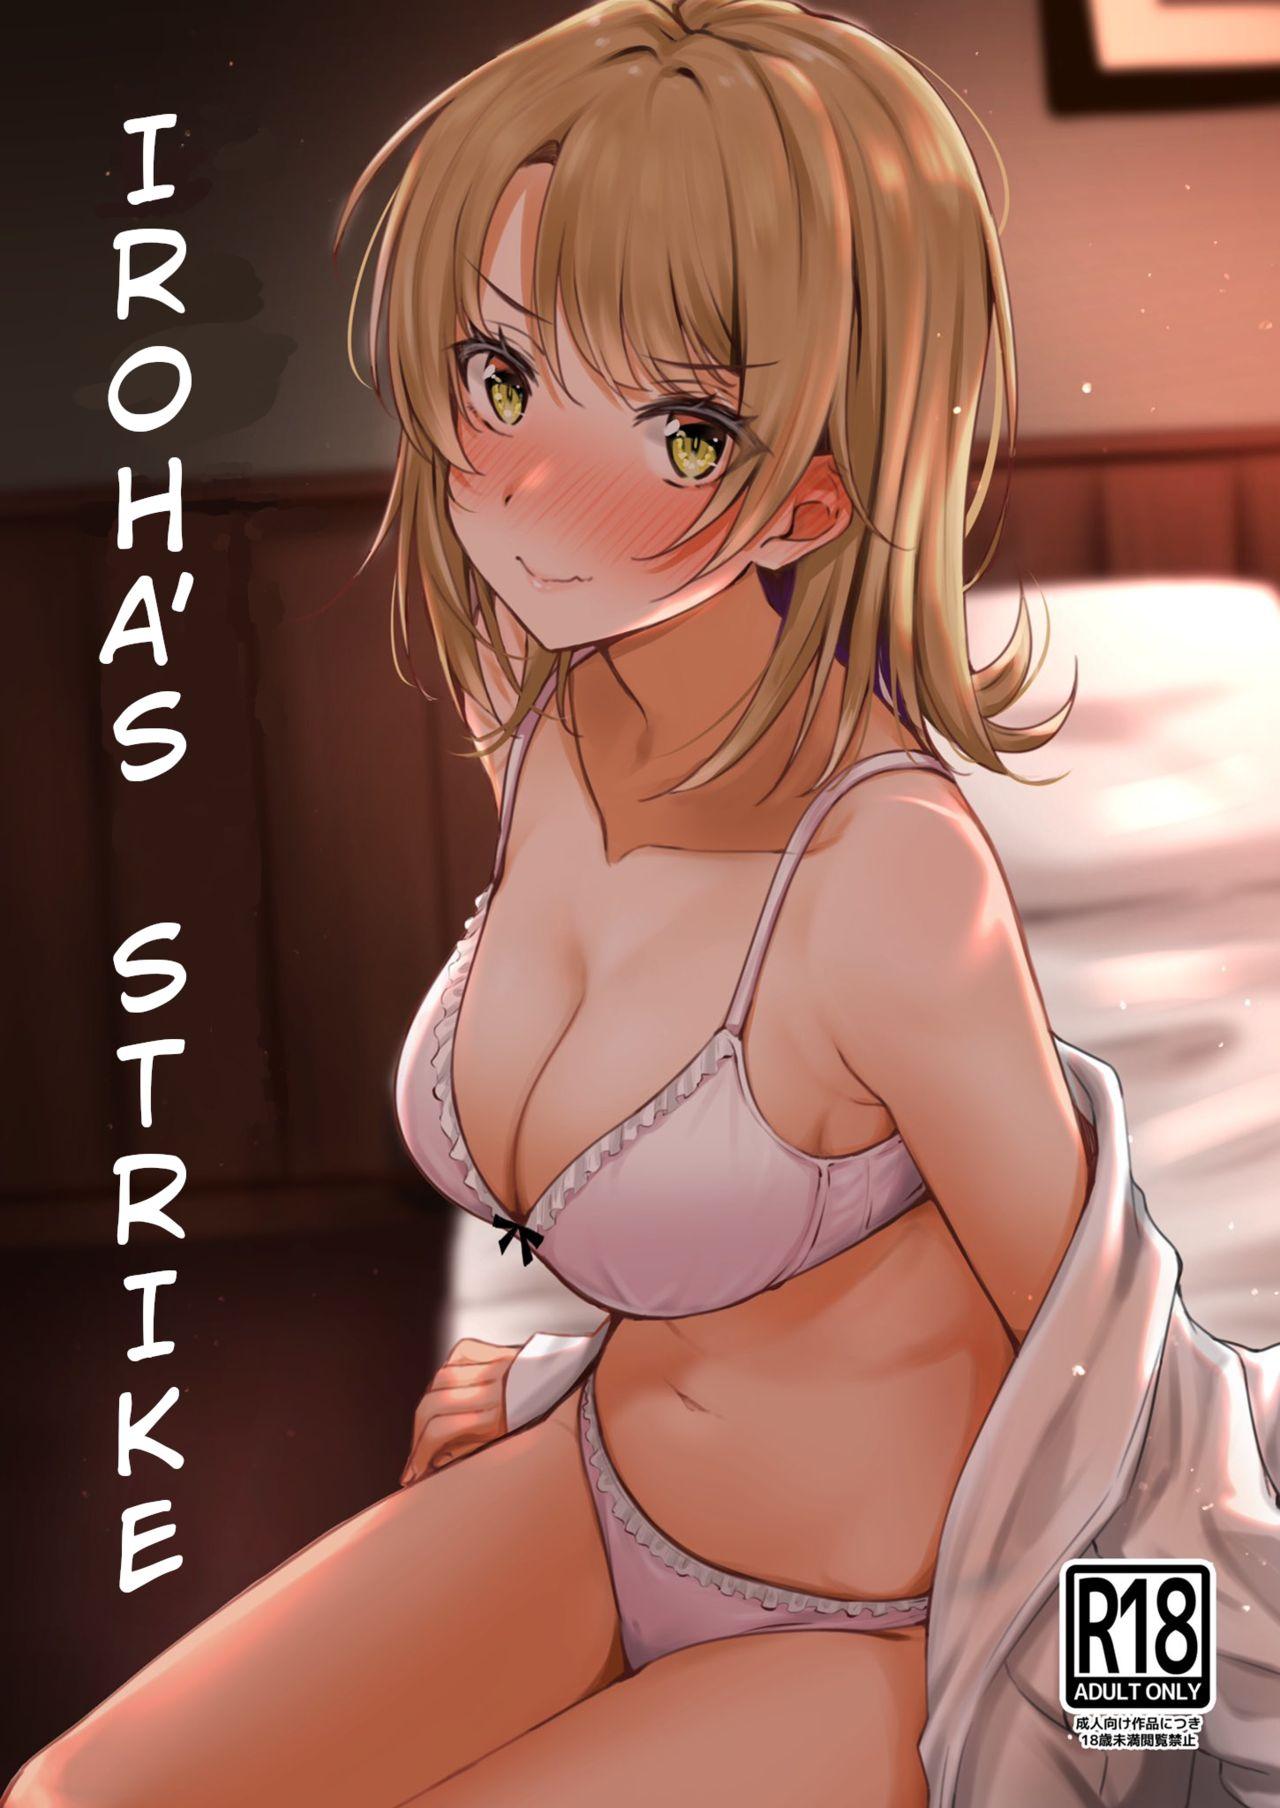 Seduction Porn Irohasu to. | Iroha's Strike - Yahari ore no seishun love come wa machigatteiru Alternative - Page 1